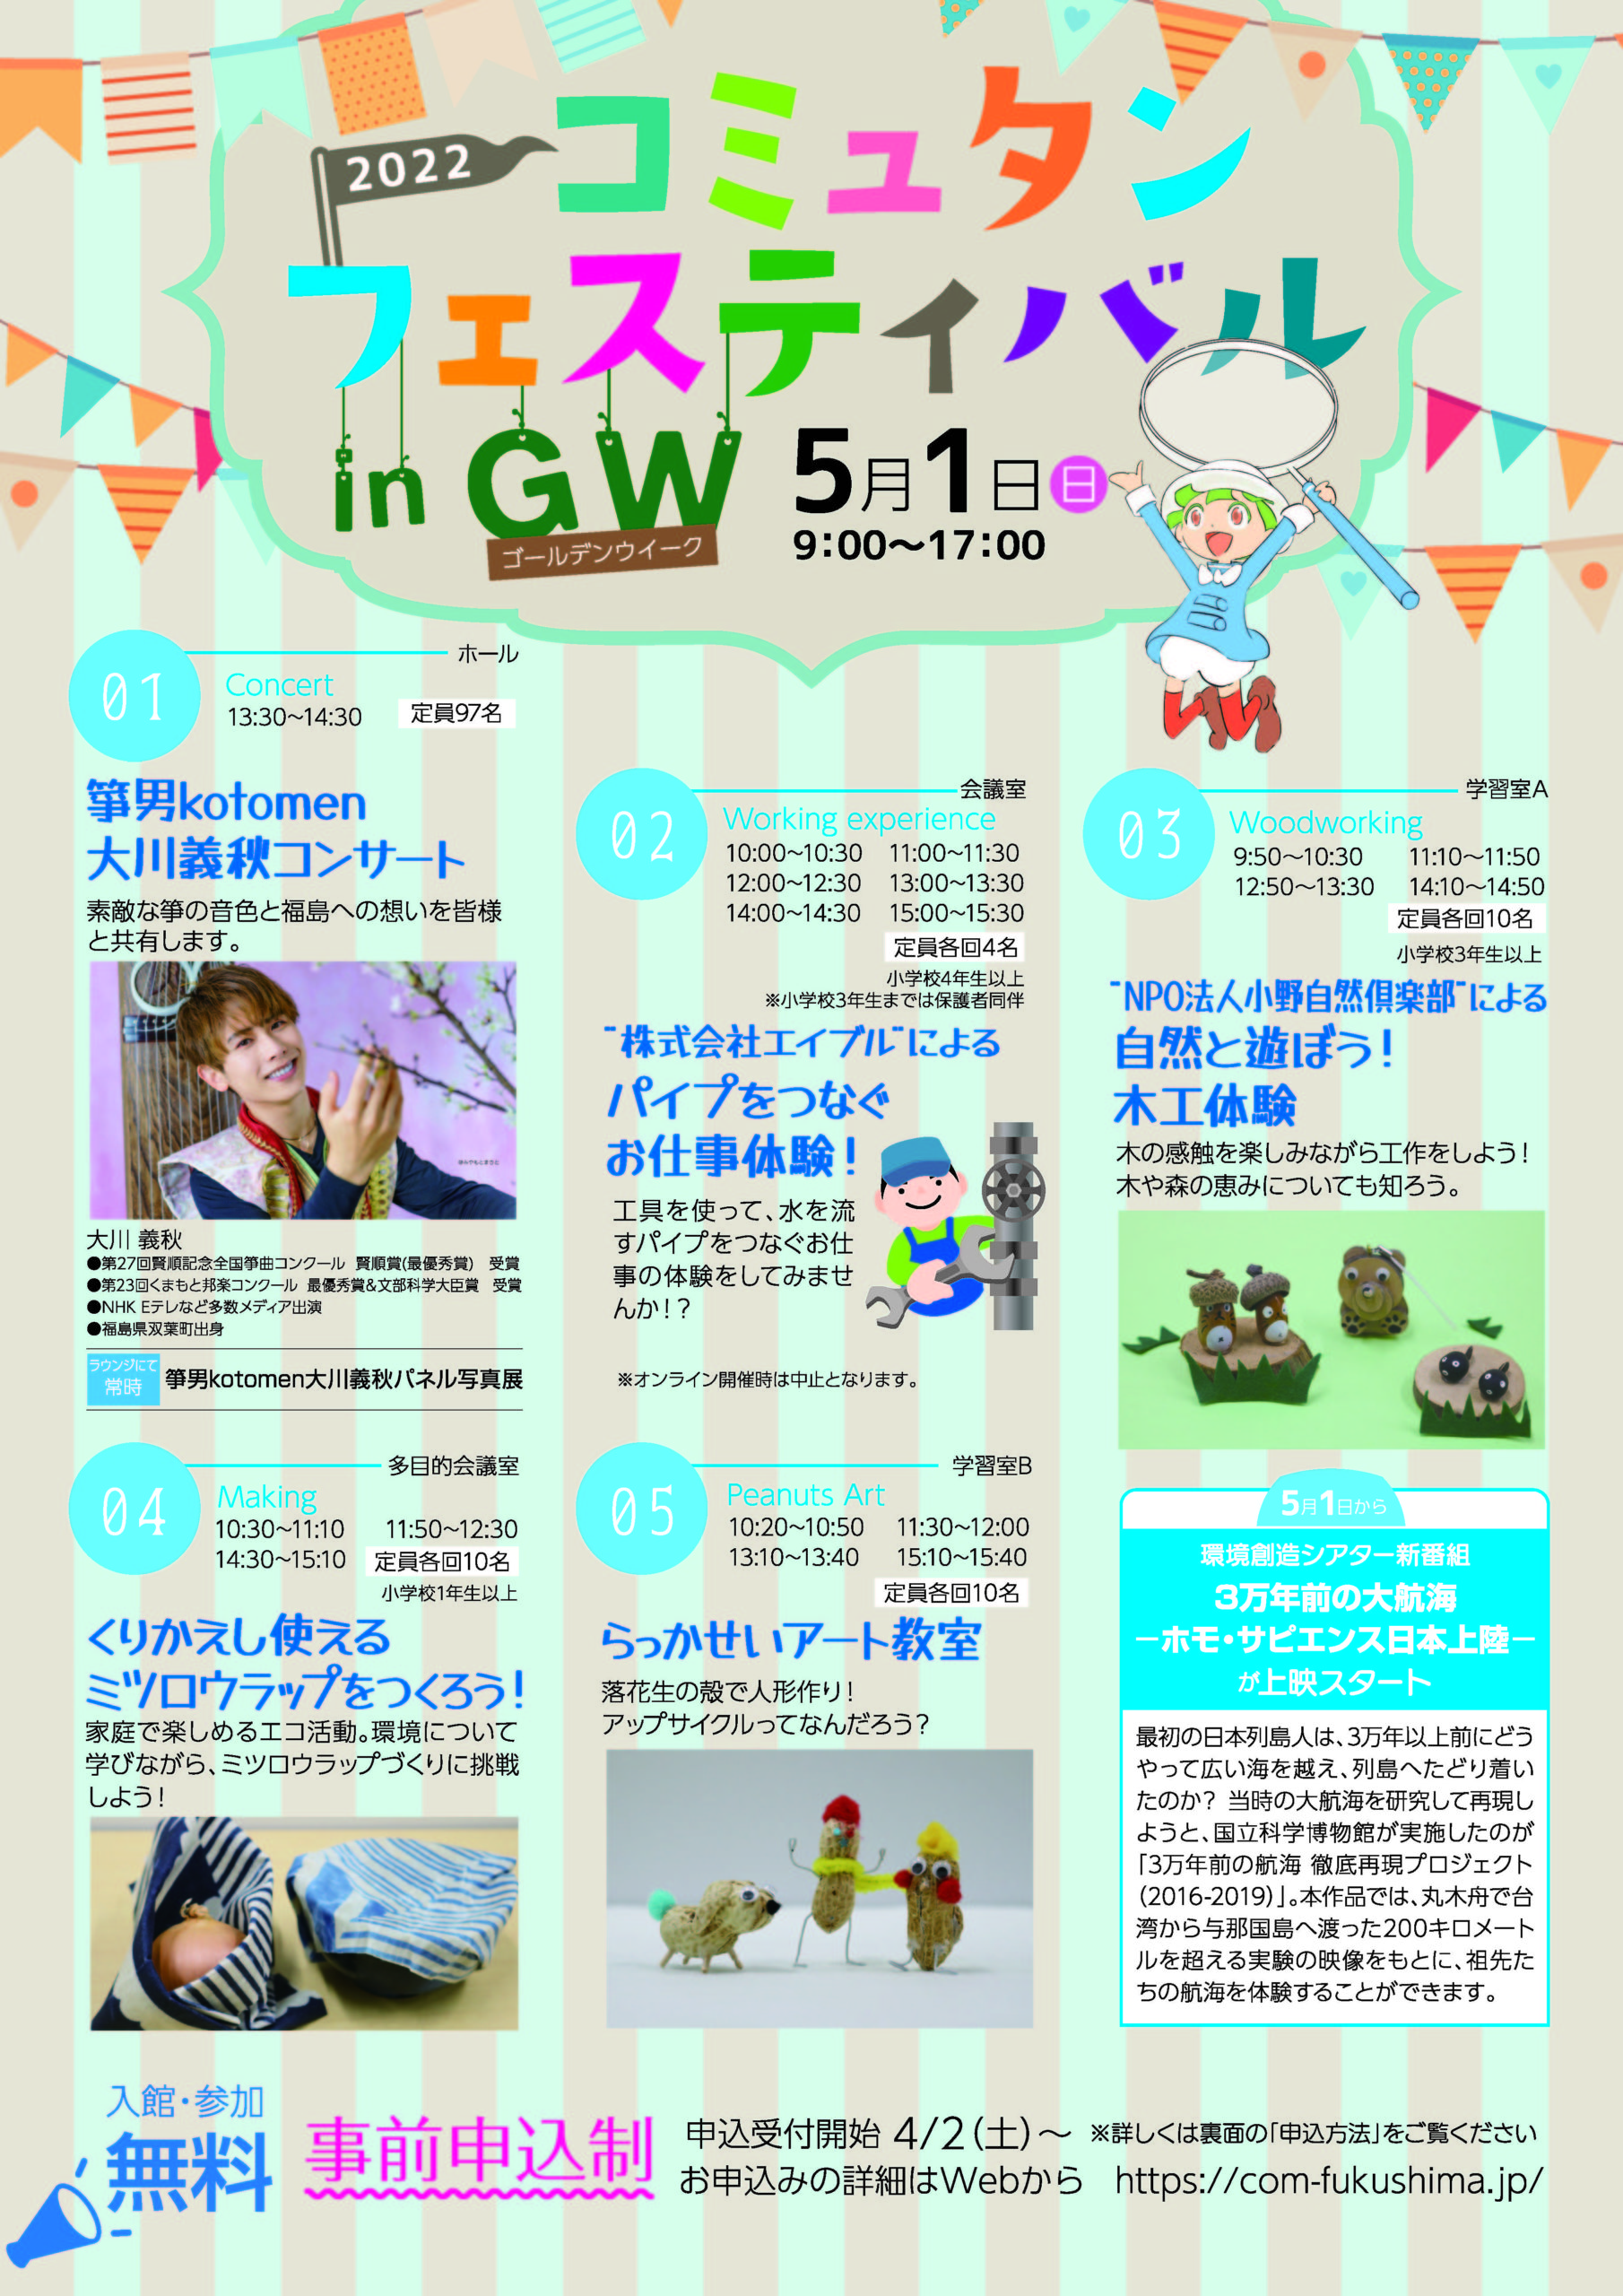 コミュタンフェスティバル in GW ◆5月1日(日)